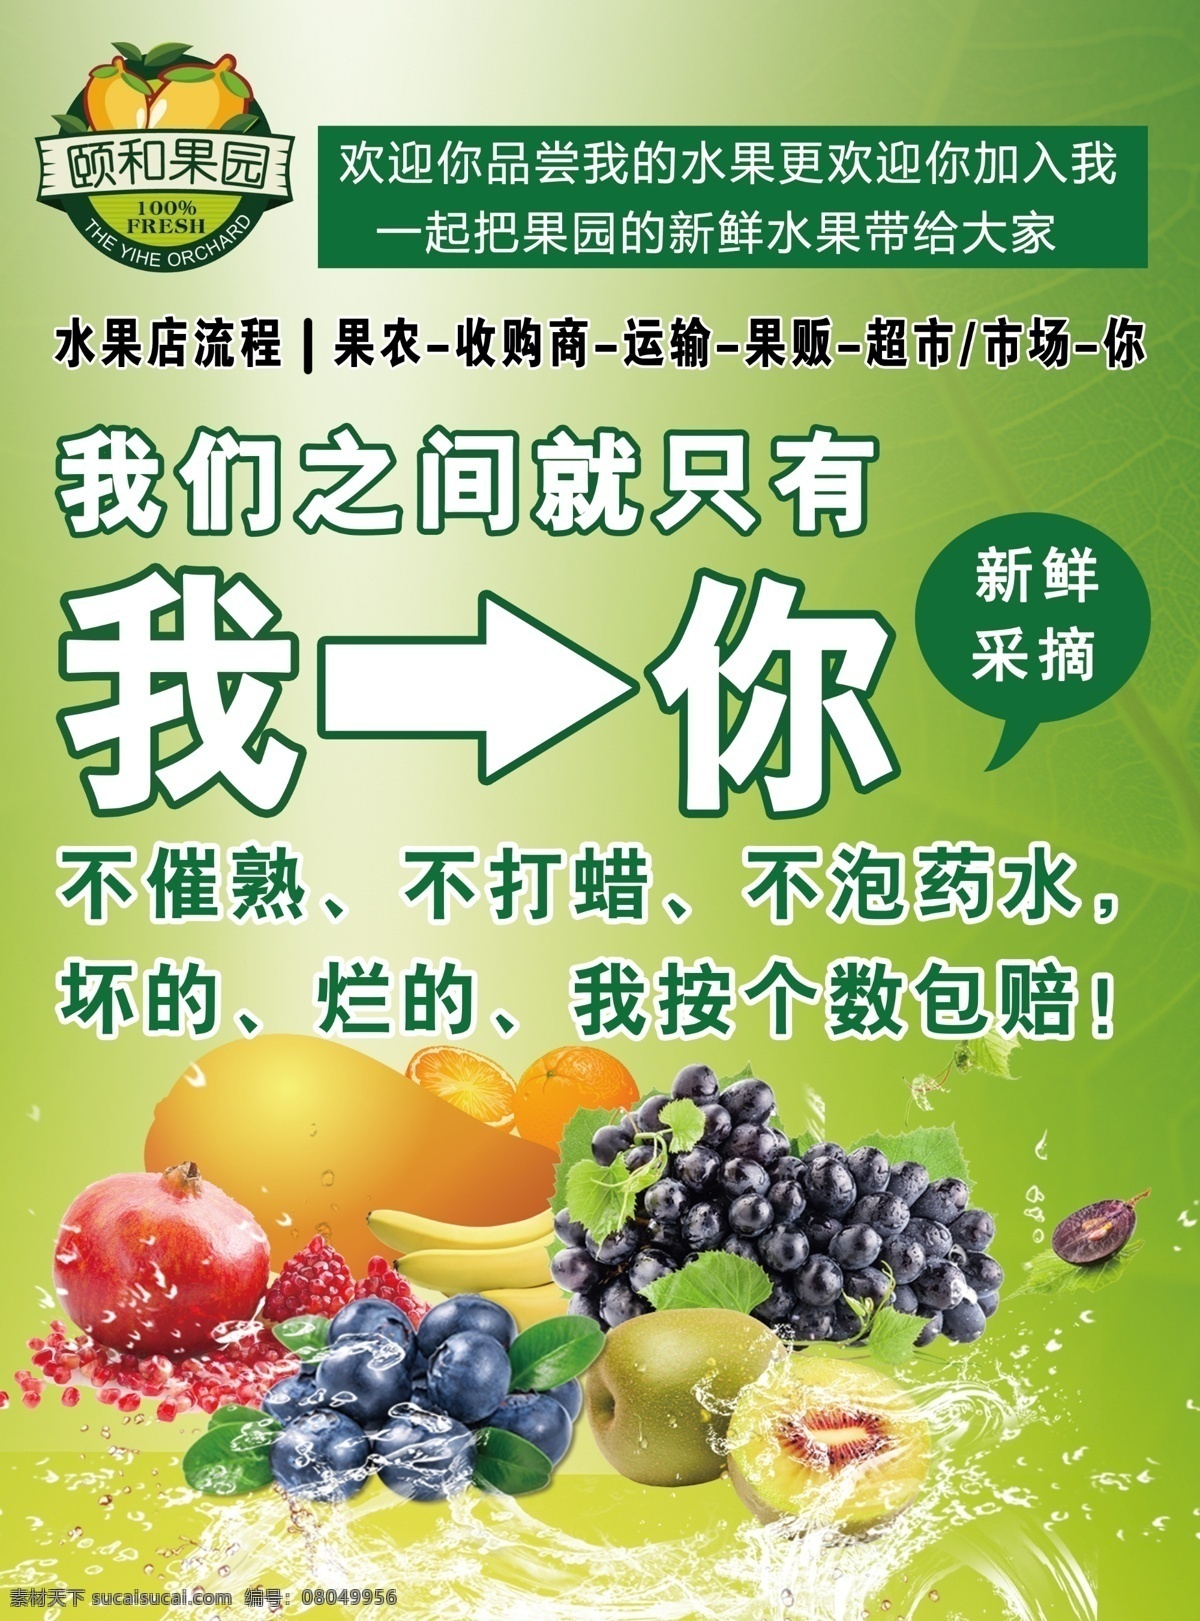 颐和果园 新鲜 水果 快速 催熟 不打蜡 不泡药水 超市 市场 宣传单 果 运输 果农 分层